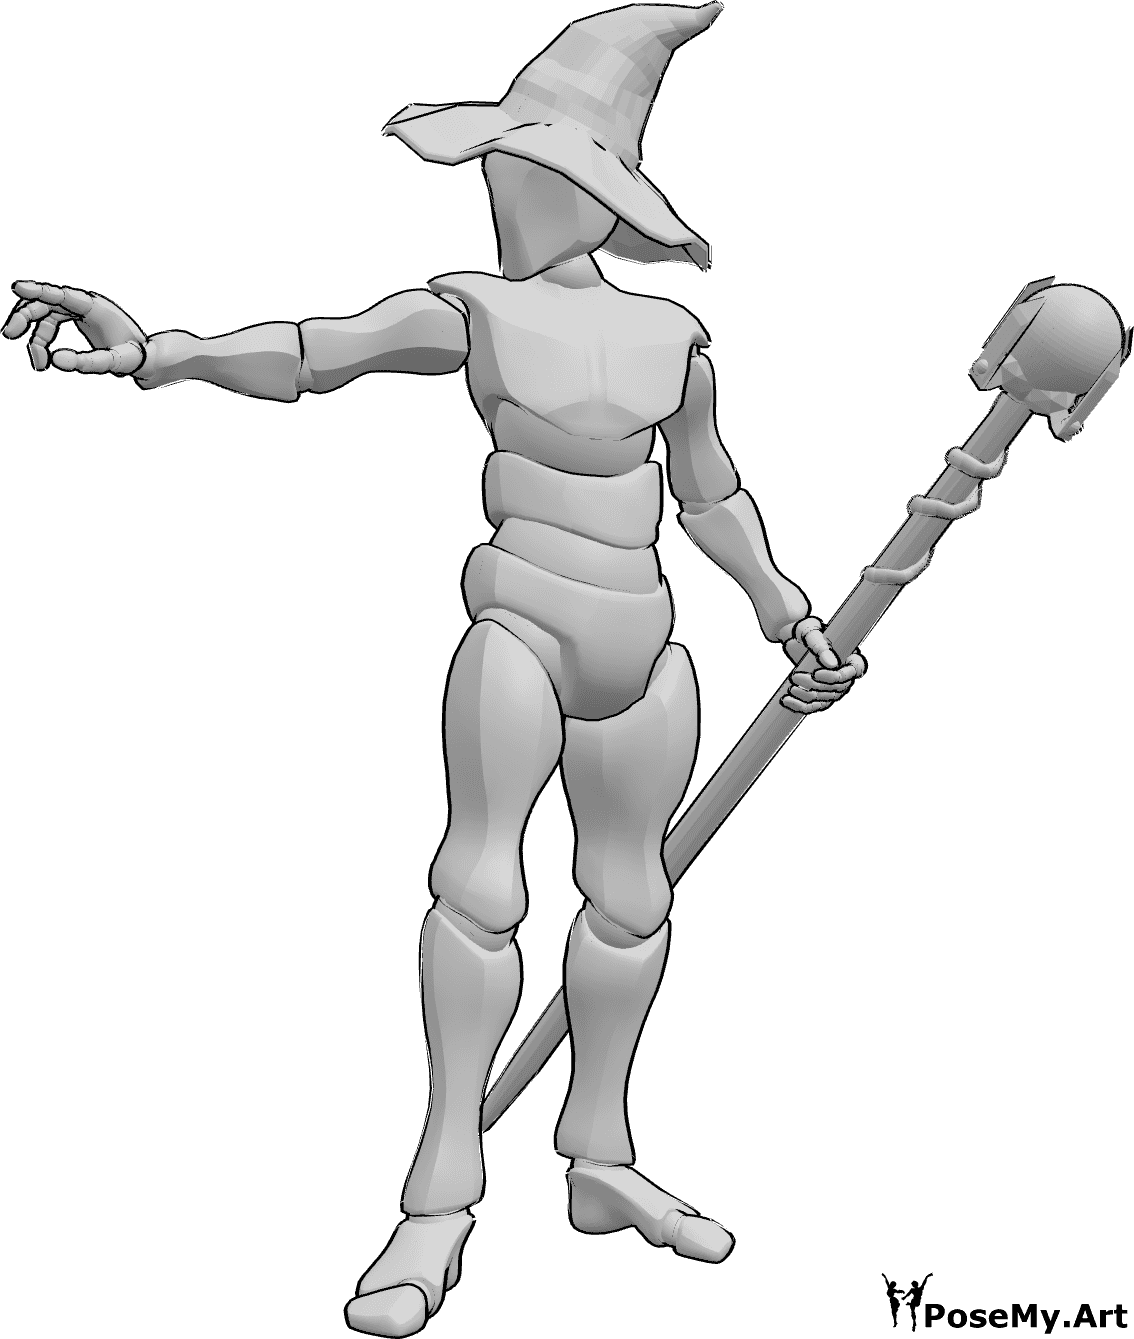 Riferimento alle pose- Posa del mago che lancia incantesimi - Mago maschio in piedi, che tiene un bastone nella mano sinistra e lancia un incantesimo con la mano destra.